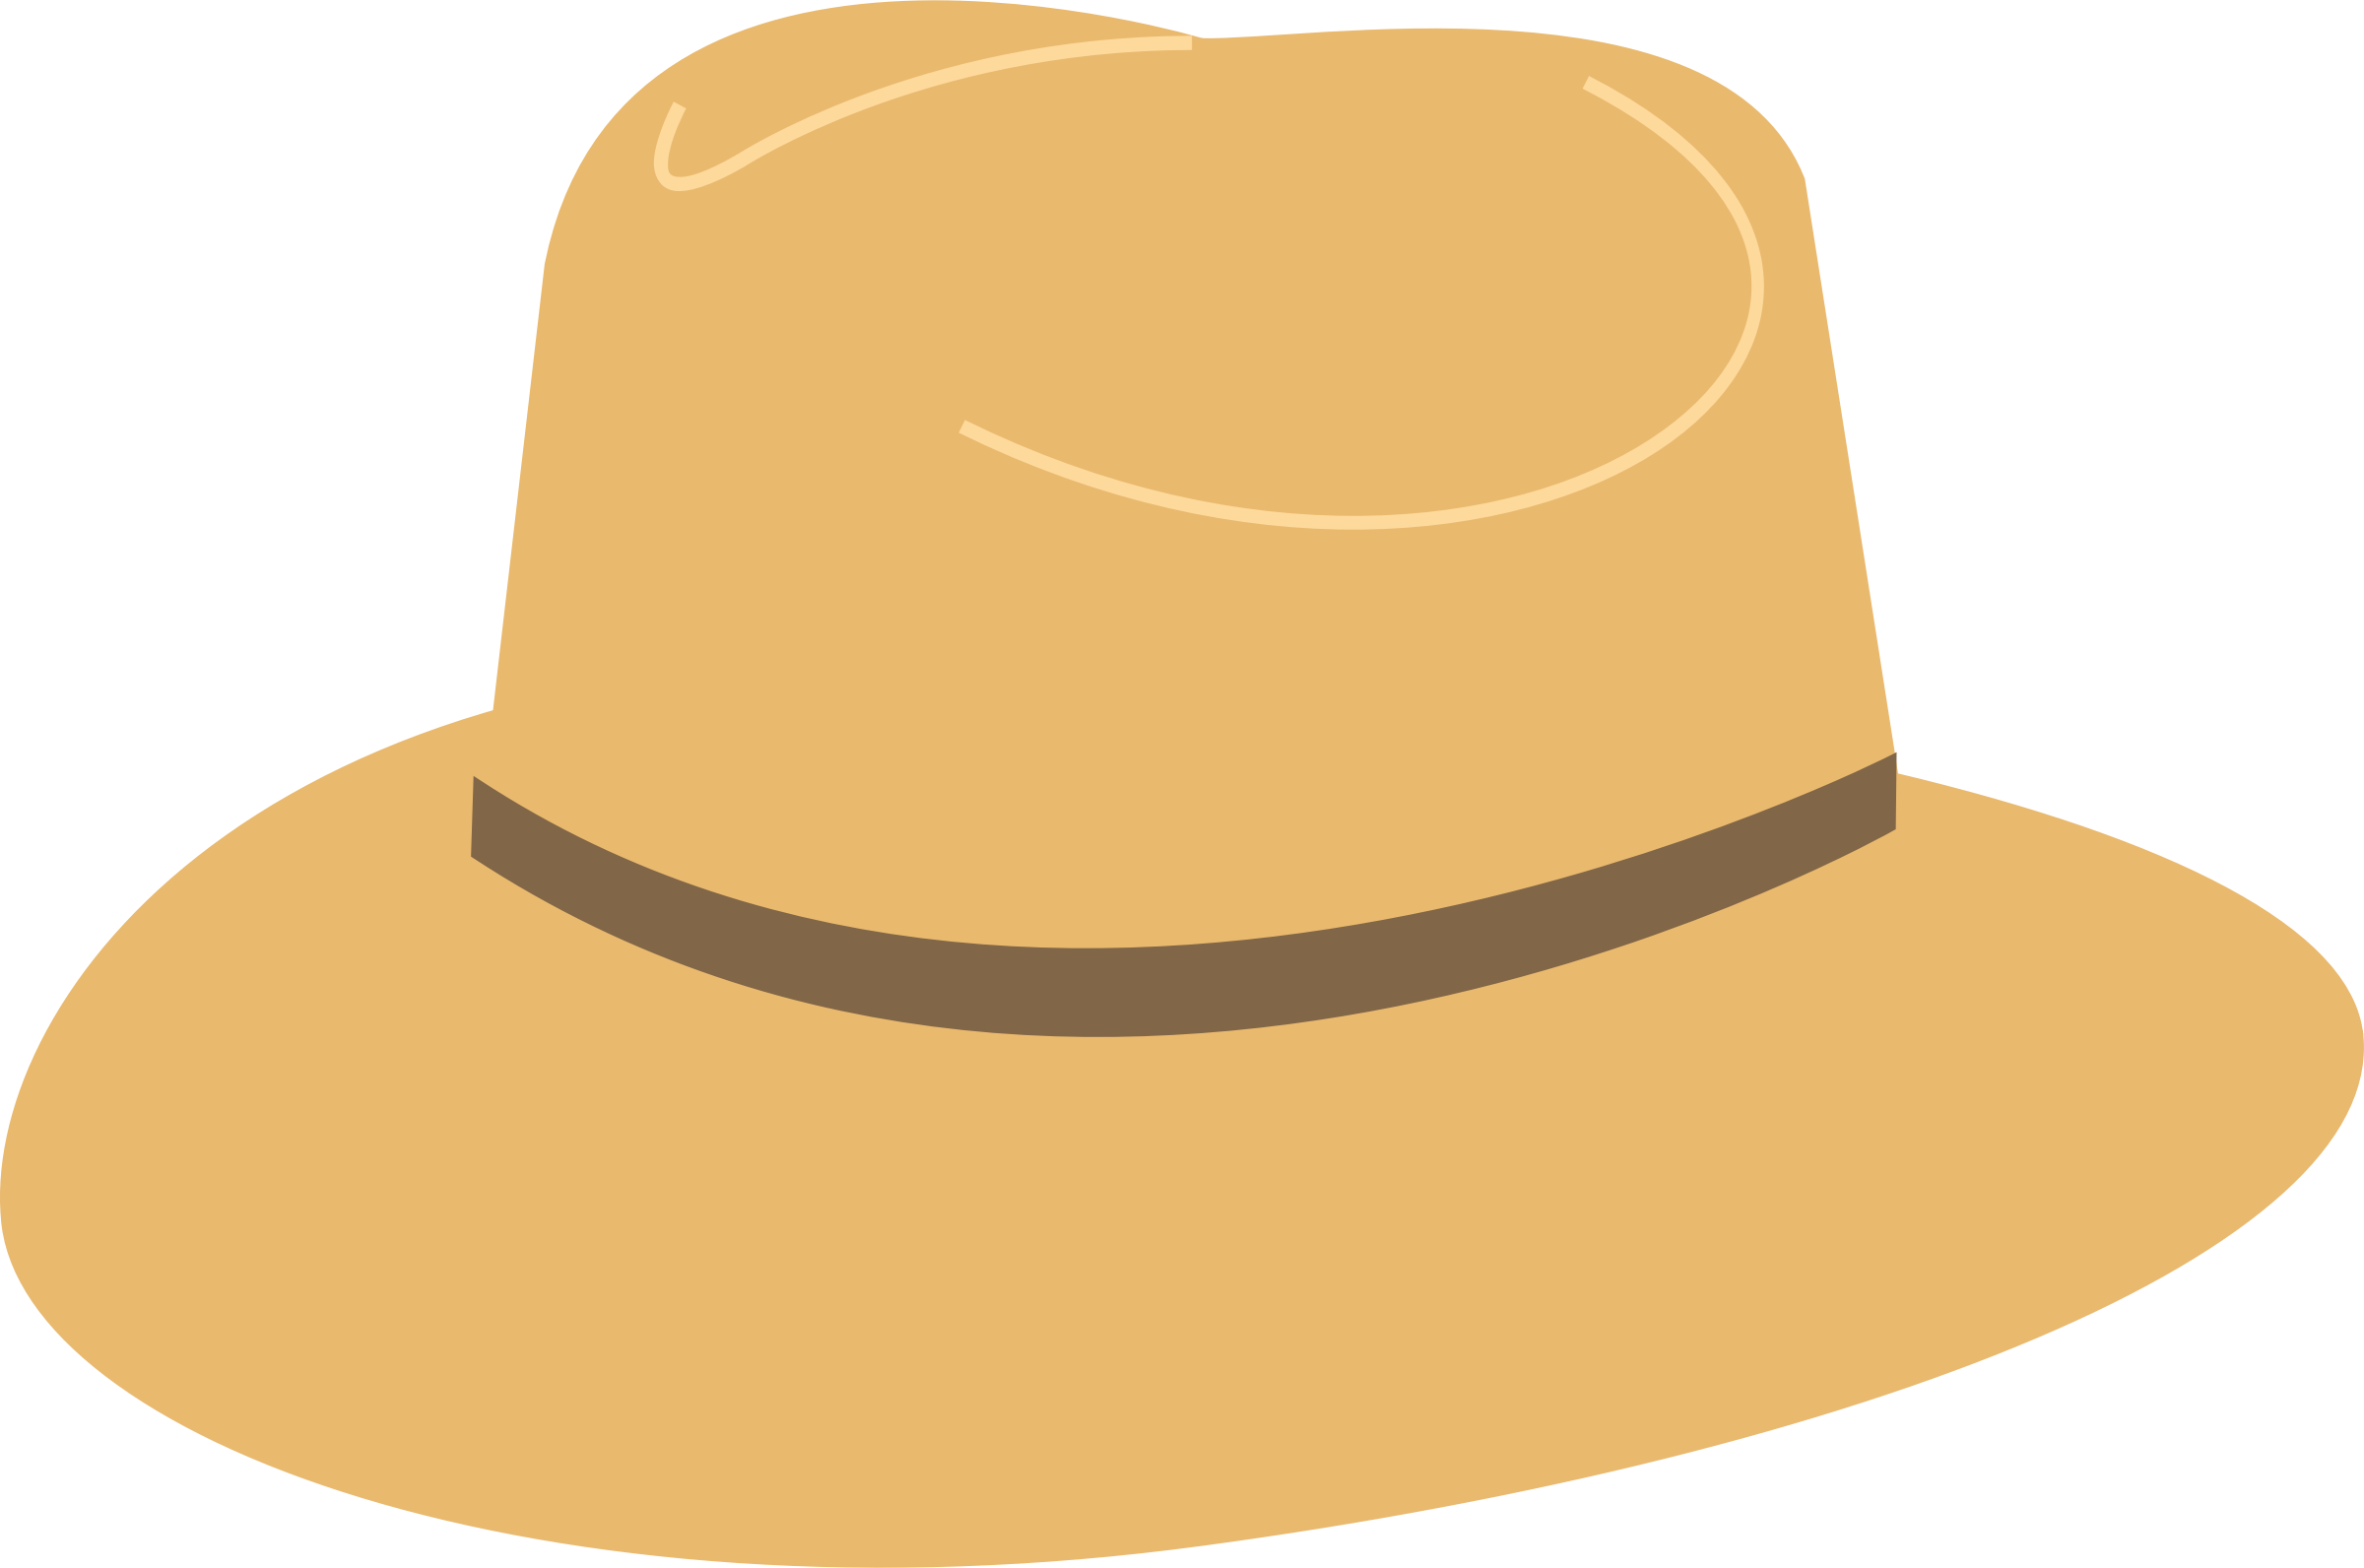 Hat Clip Art - Hat Images - Clip Art Library